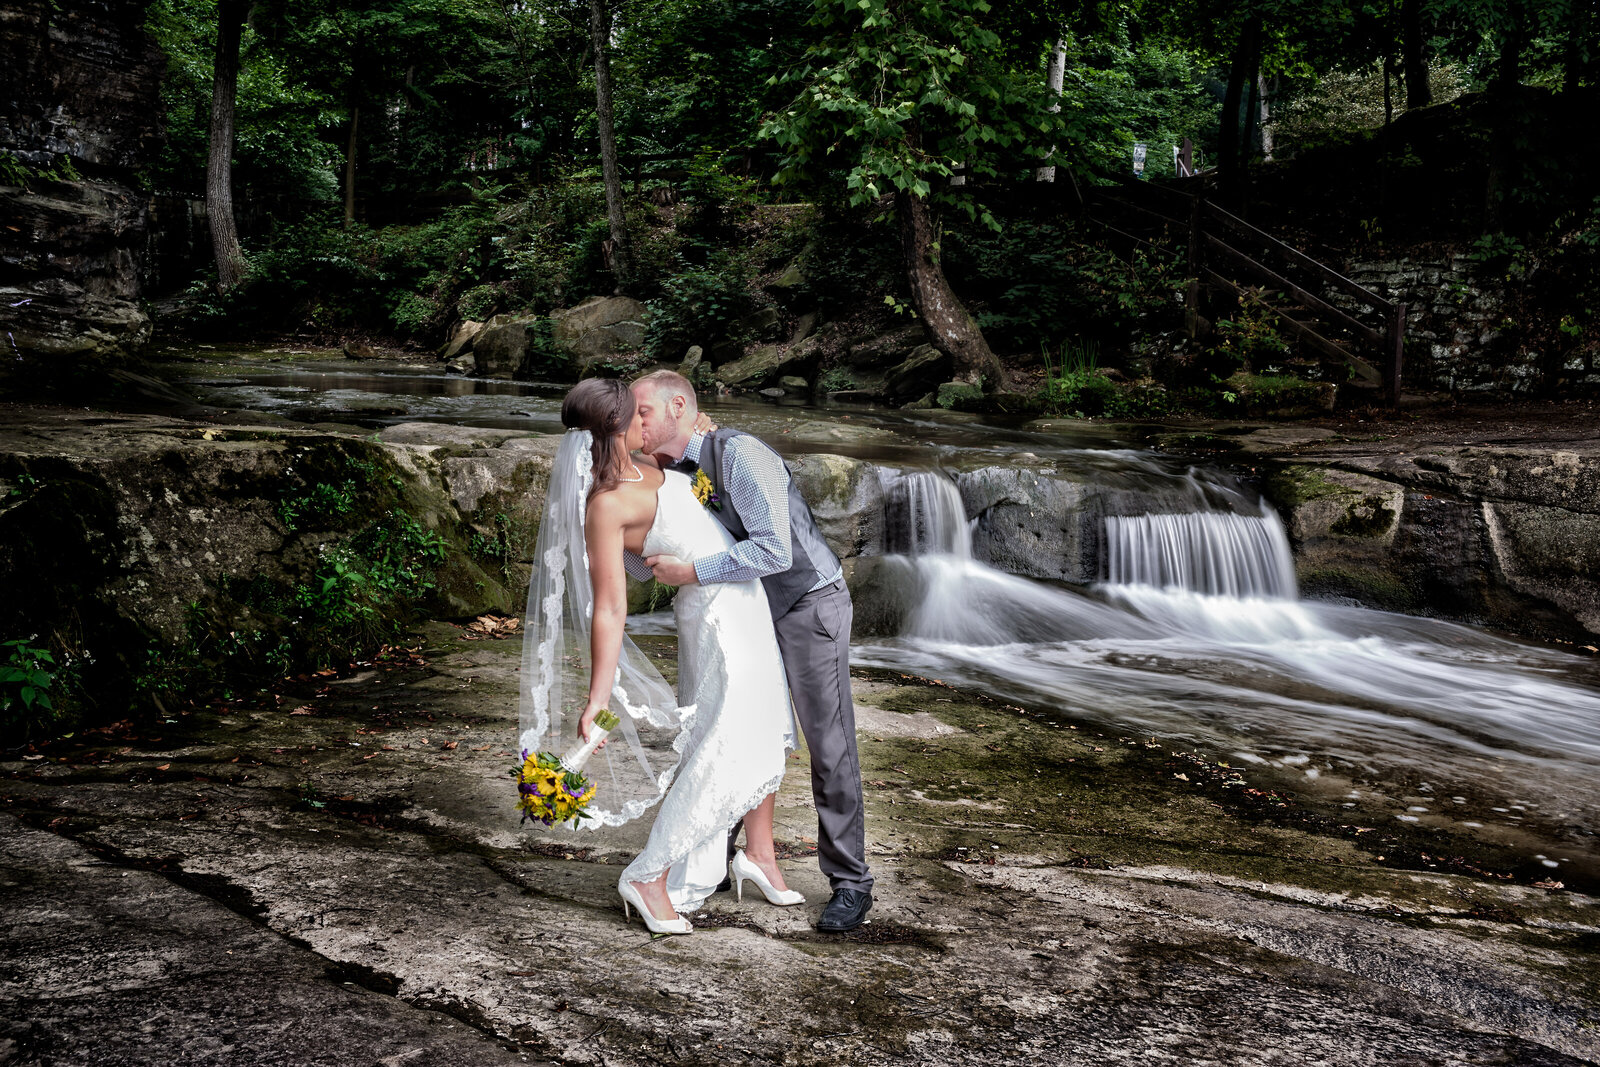 Cleveland Wedding Photography wedding photography (33 of 46)